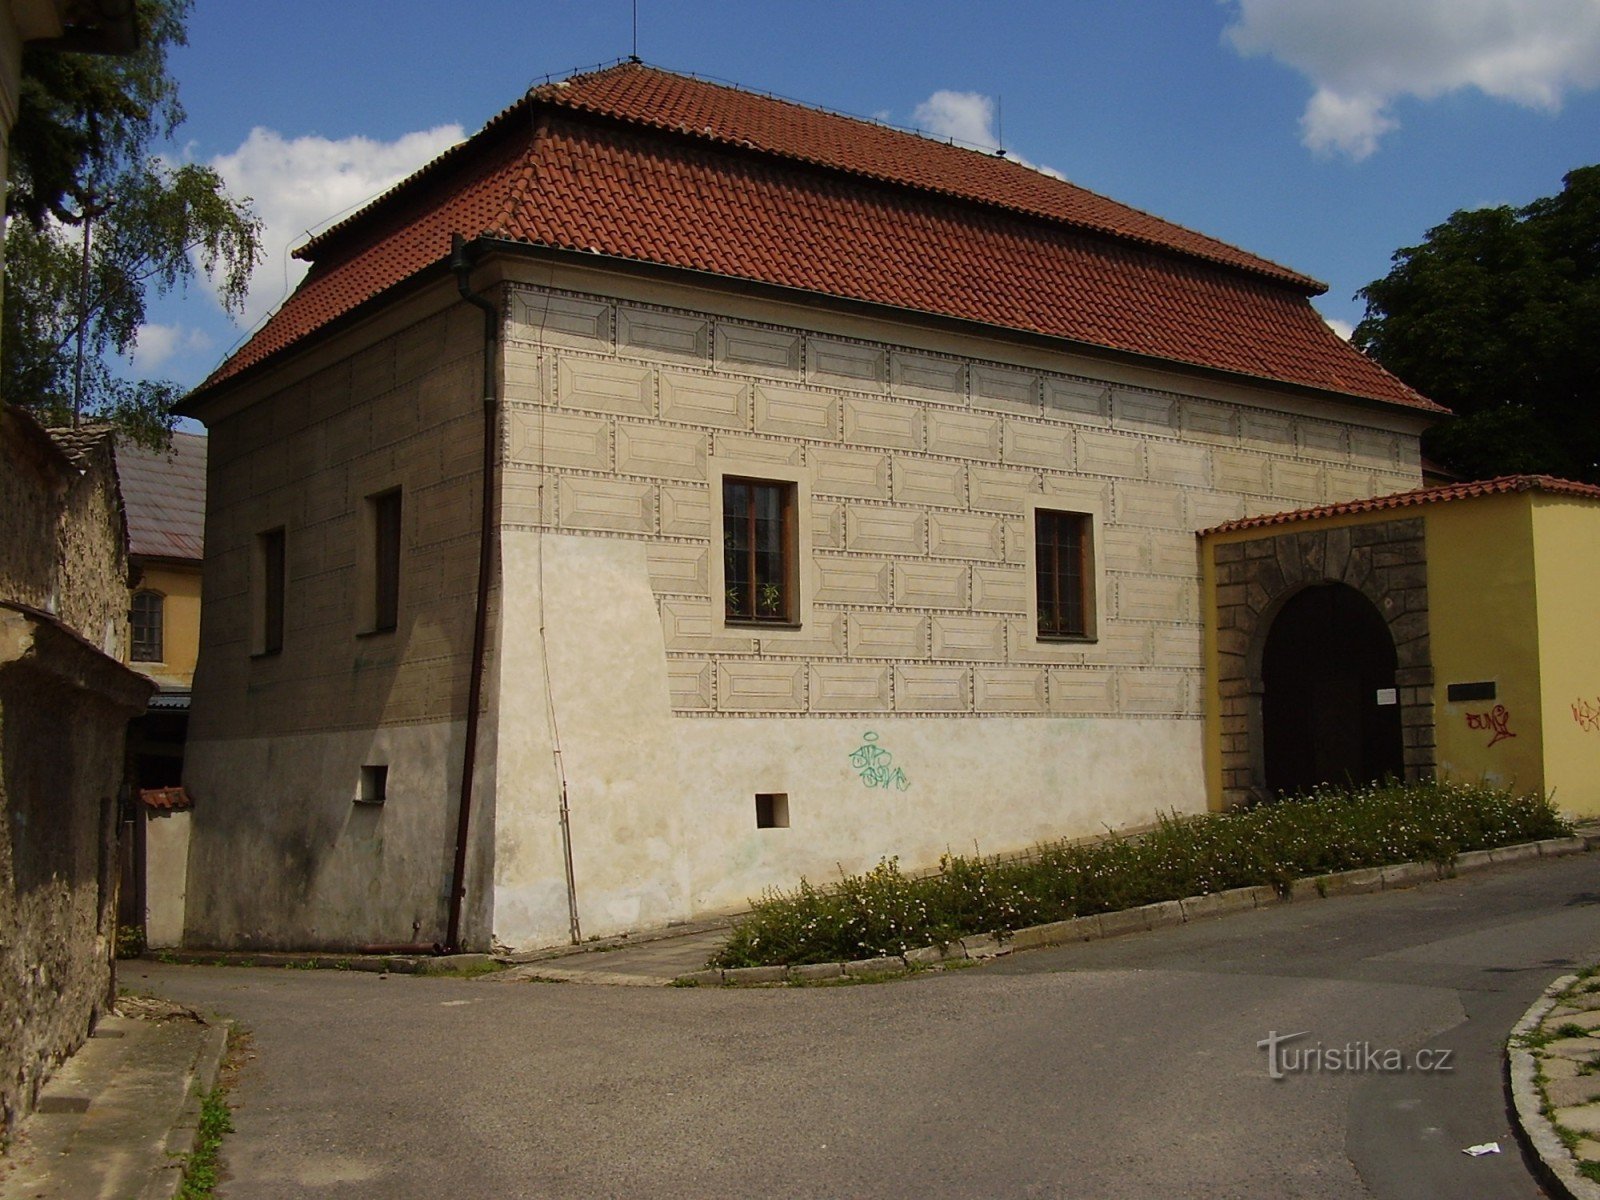 Čelákovice, fortress, city museum